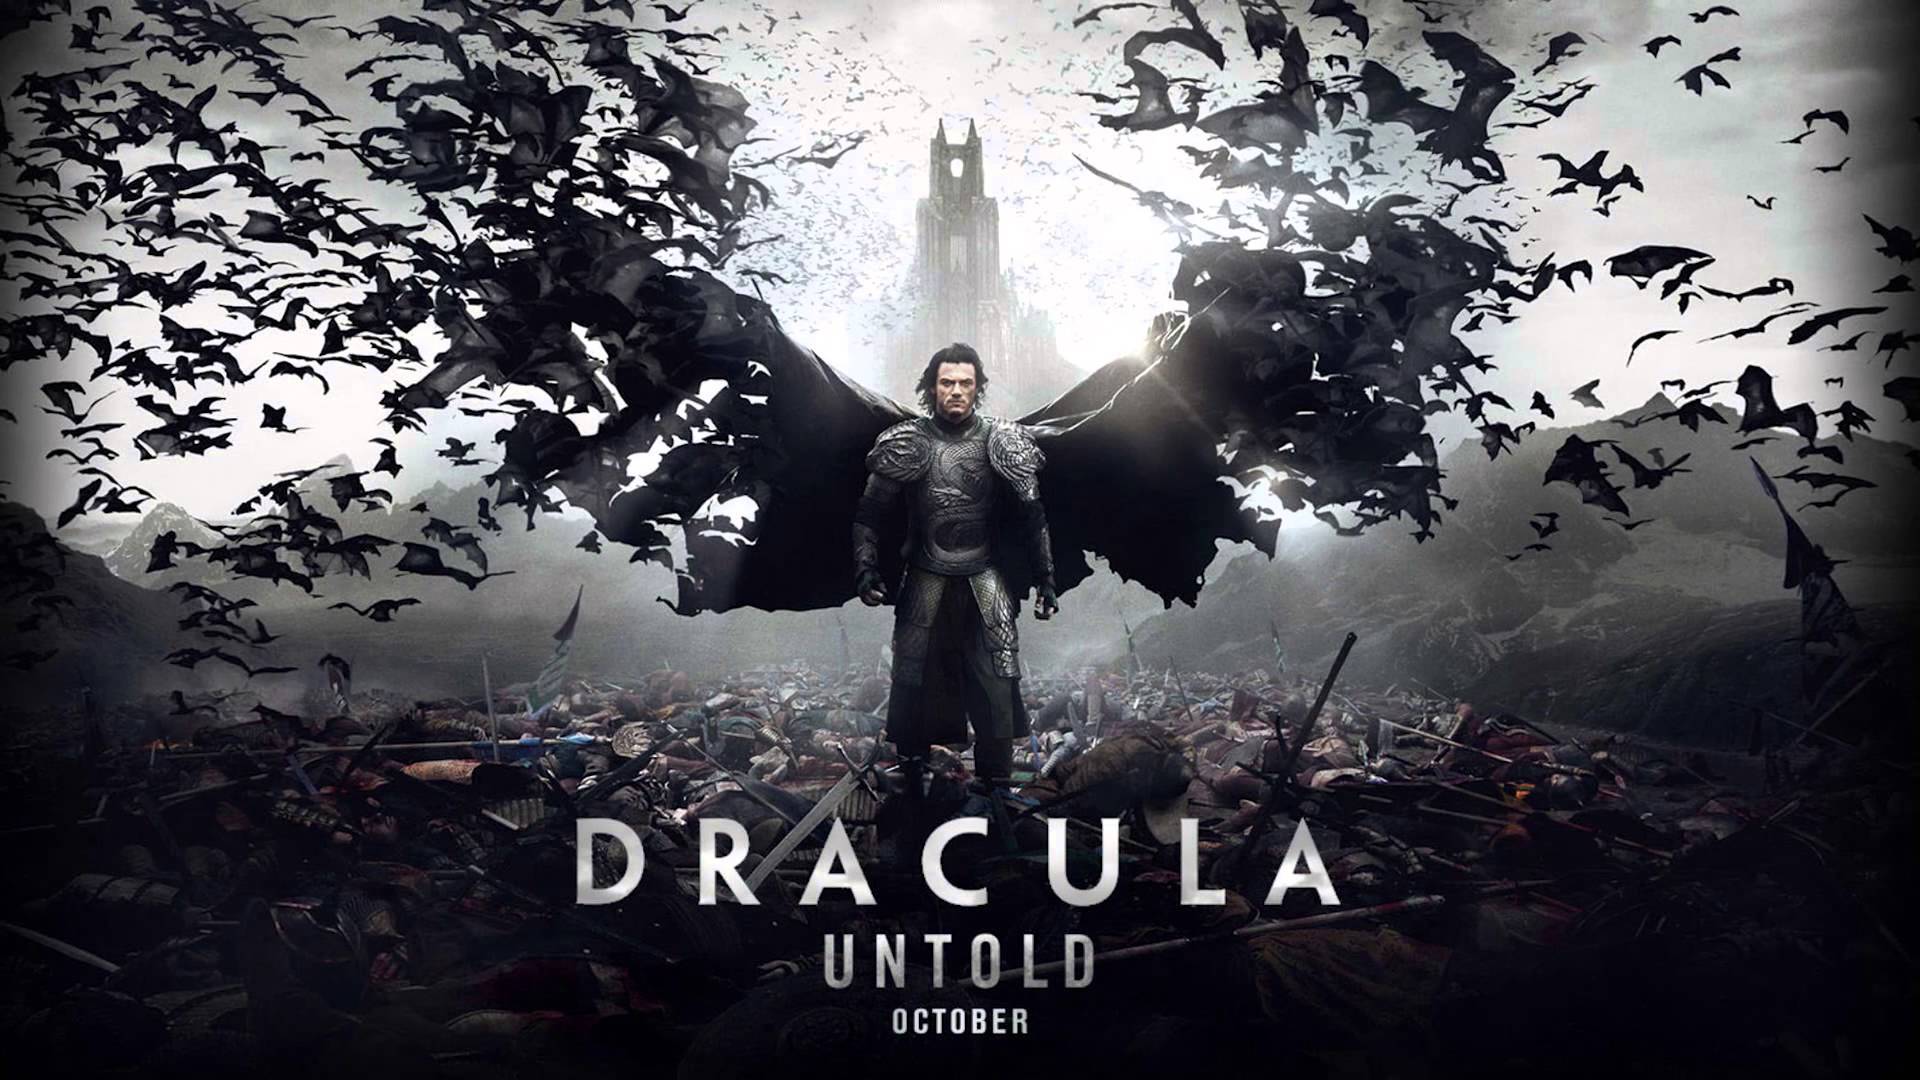 Dracula Untold / Dracula Untold (2014)